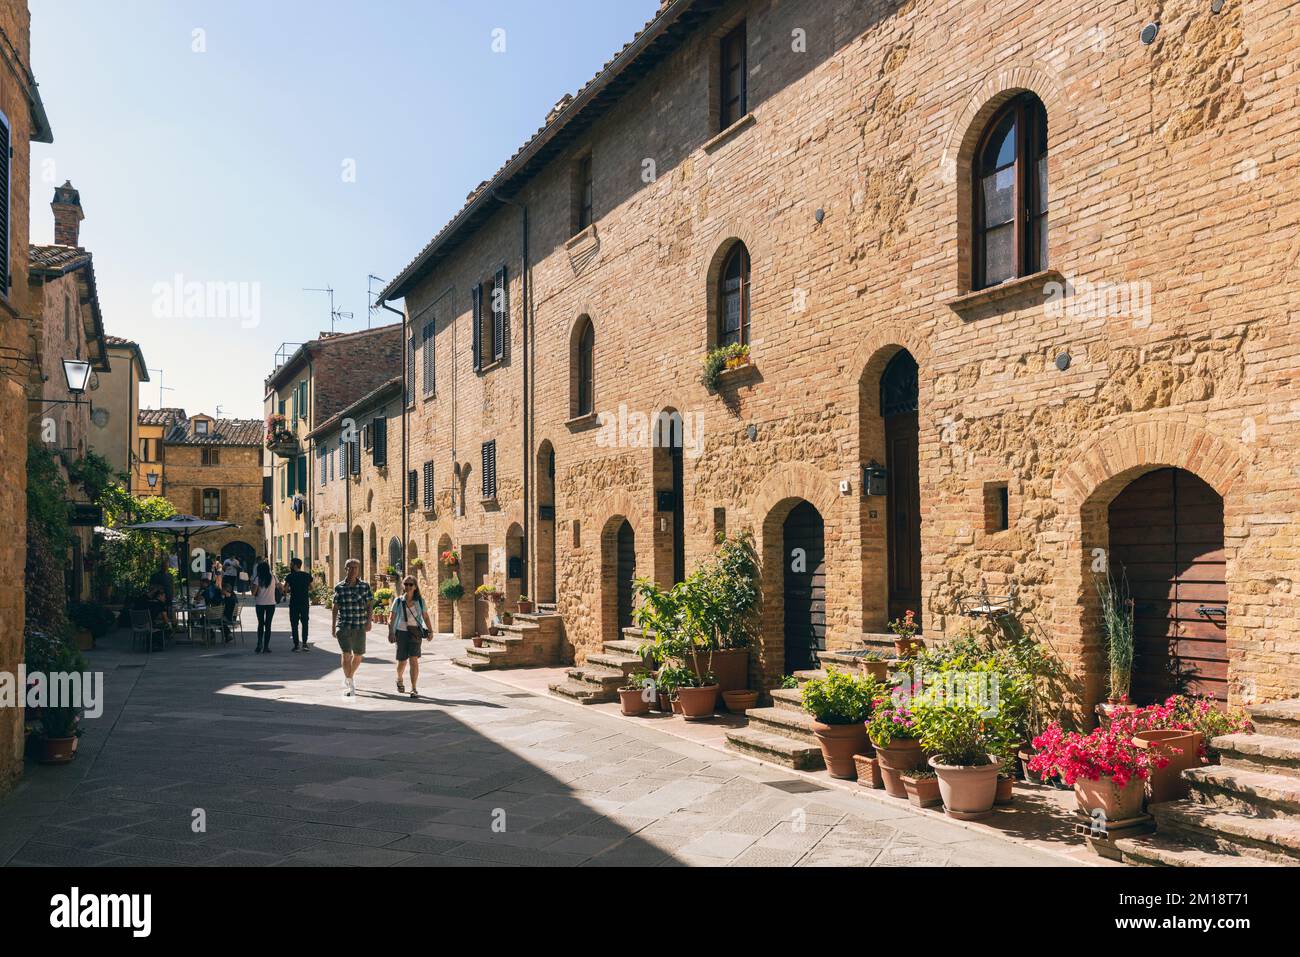 Pienza, Provinz Siena, Toskana, Italien. Über Case Nuove. Typische Straßenszene. Pienza ist ein UNESCO-Weltkulturerbe. Stockfoto